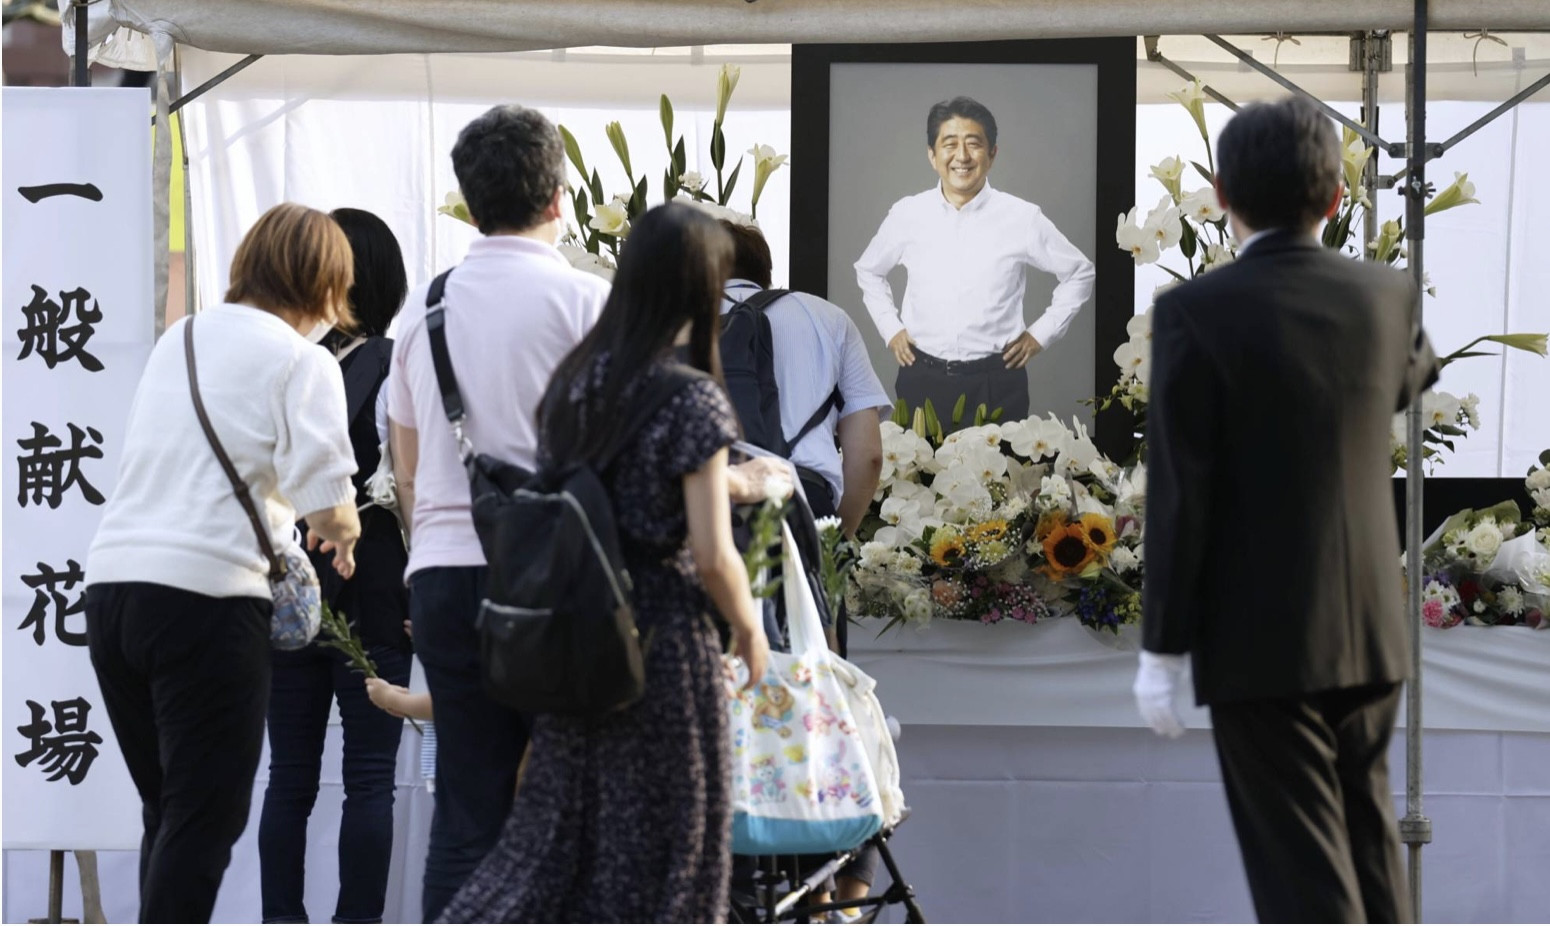 Nhật Bản chuẩn bị tang lễ cho cựu Thủ tướng Abe Shinzo thế nào?